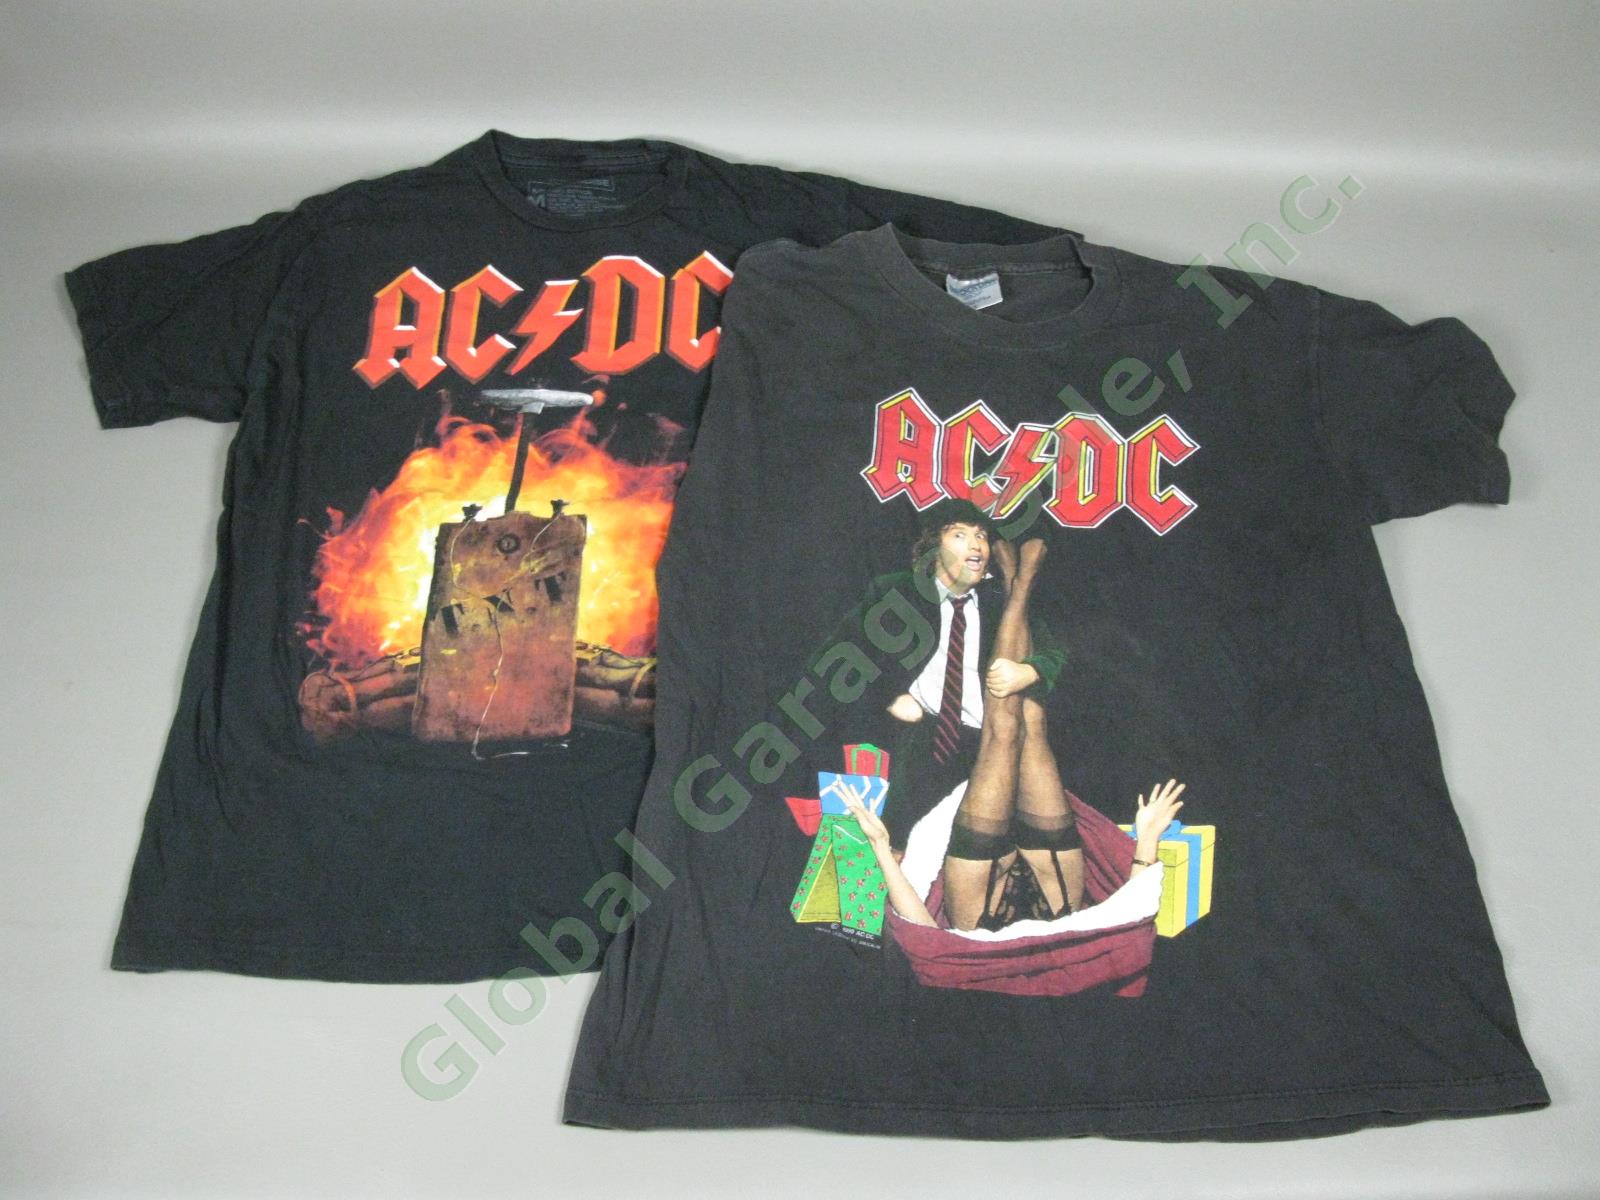 2 Vintage AC/DC T-Shirts Lot Mistress For Christmas Concert Tour & TNT Size M/L